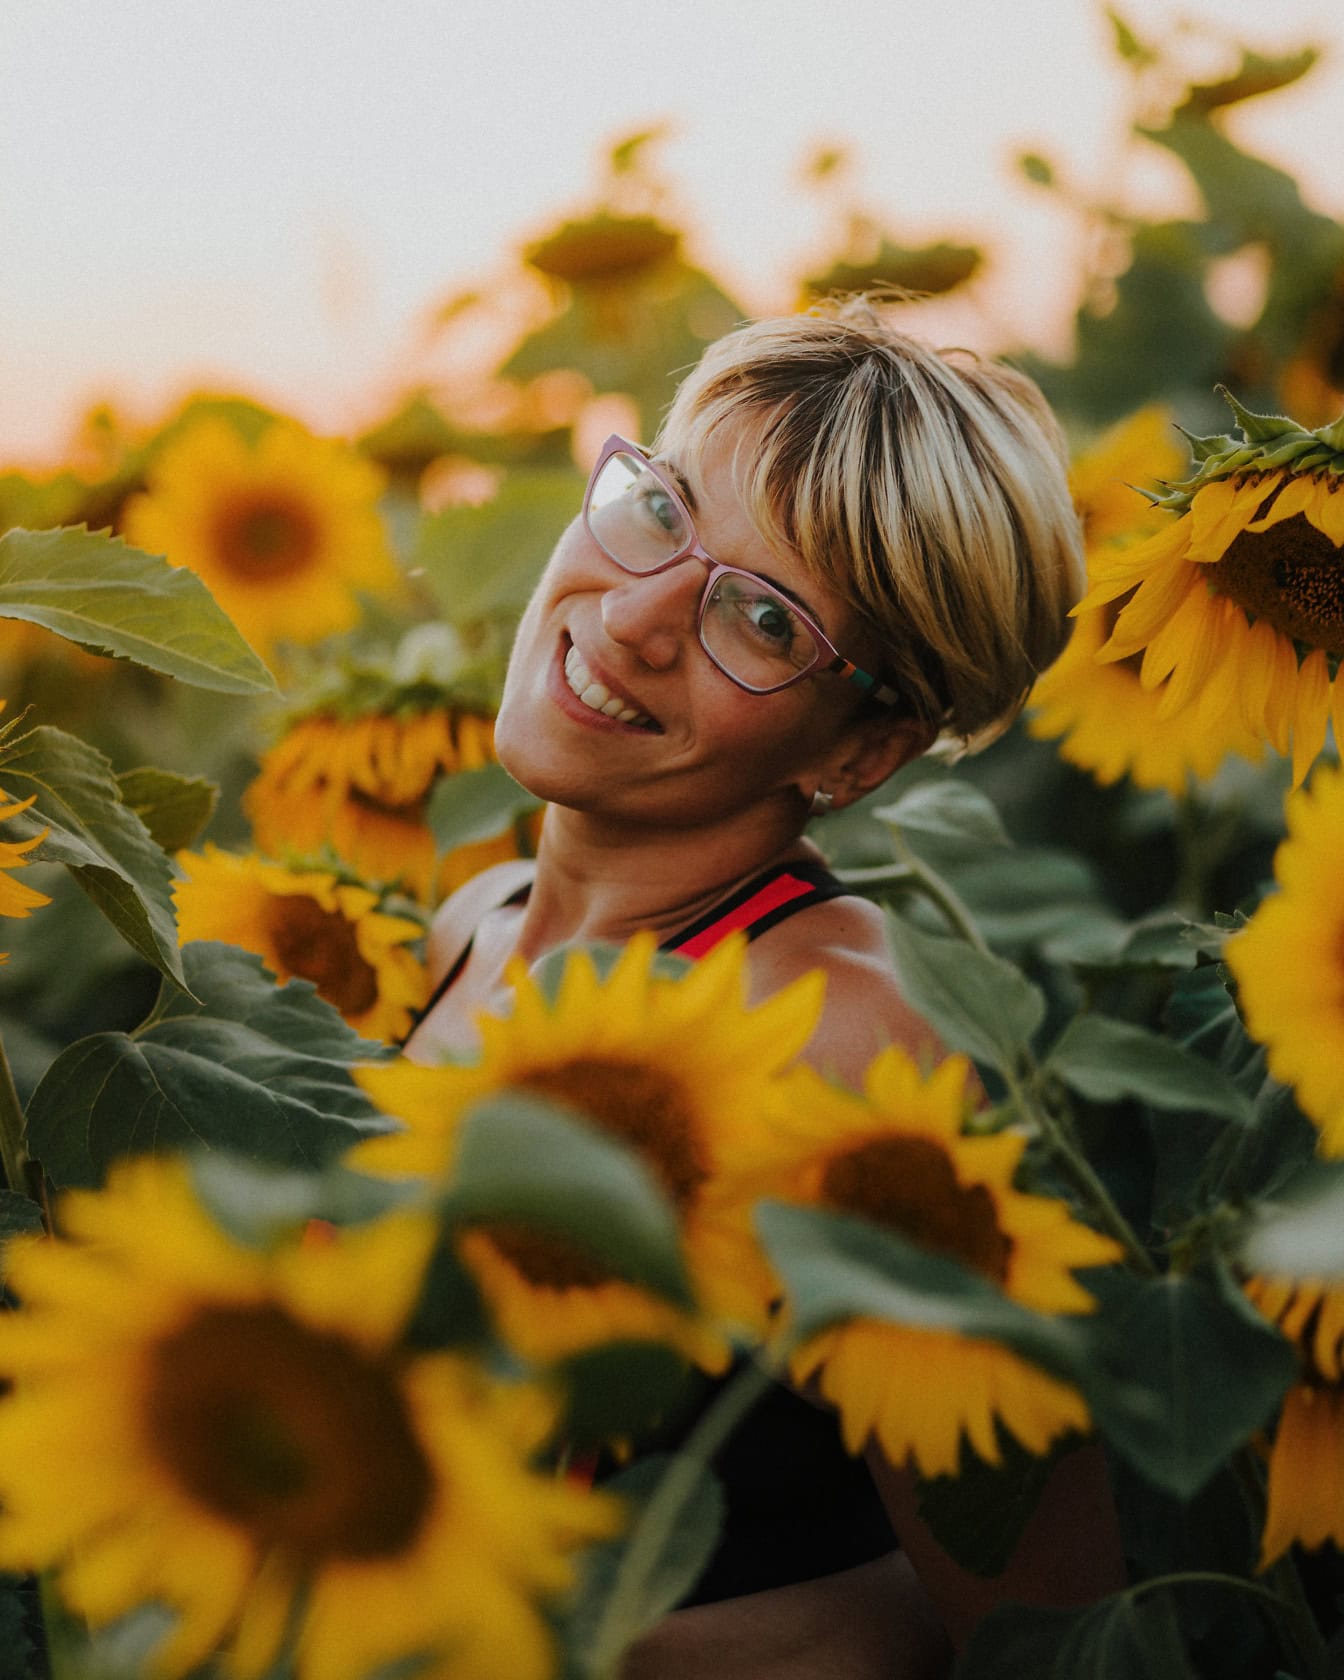 Professionellt porträtt av en lycklig kvinna med kort blond frisyr som står i ett fält av solrosor